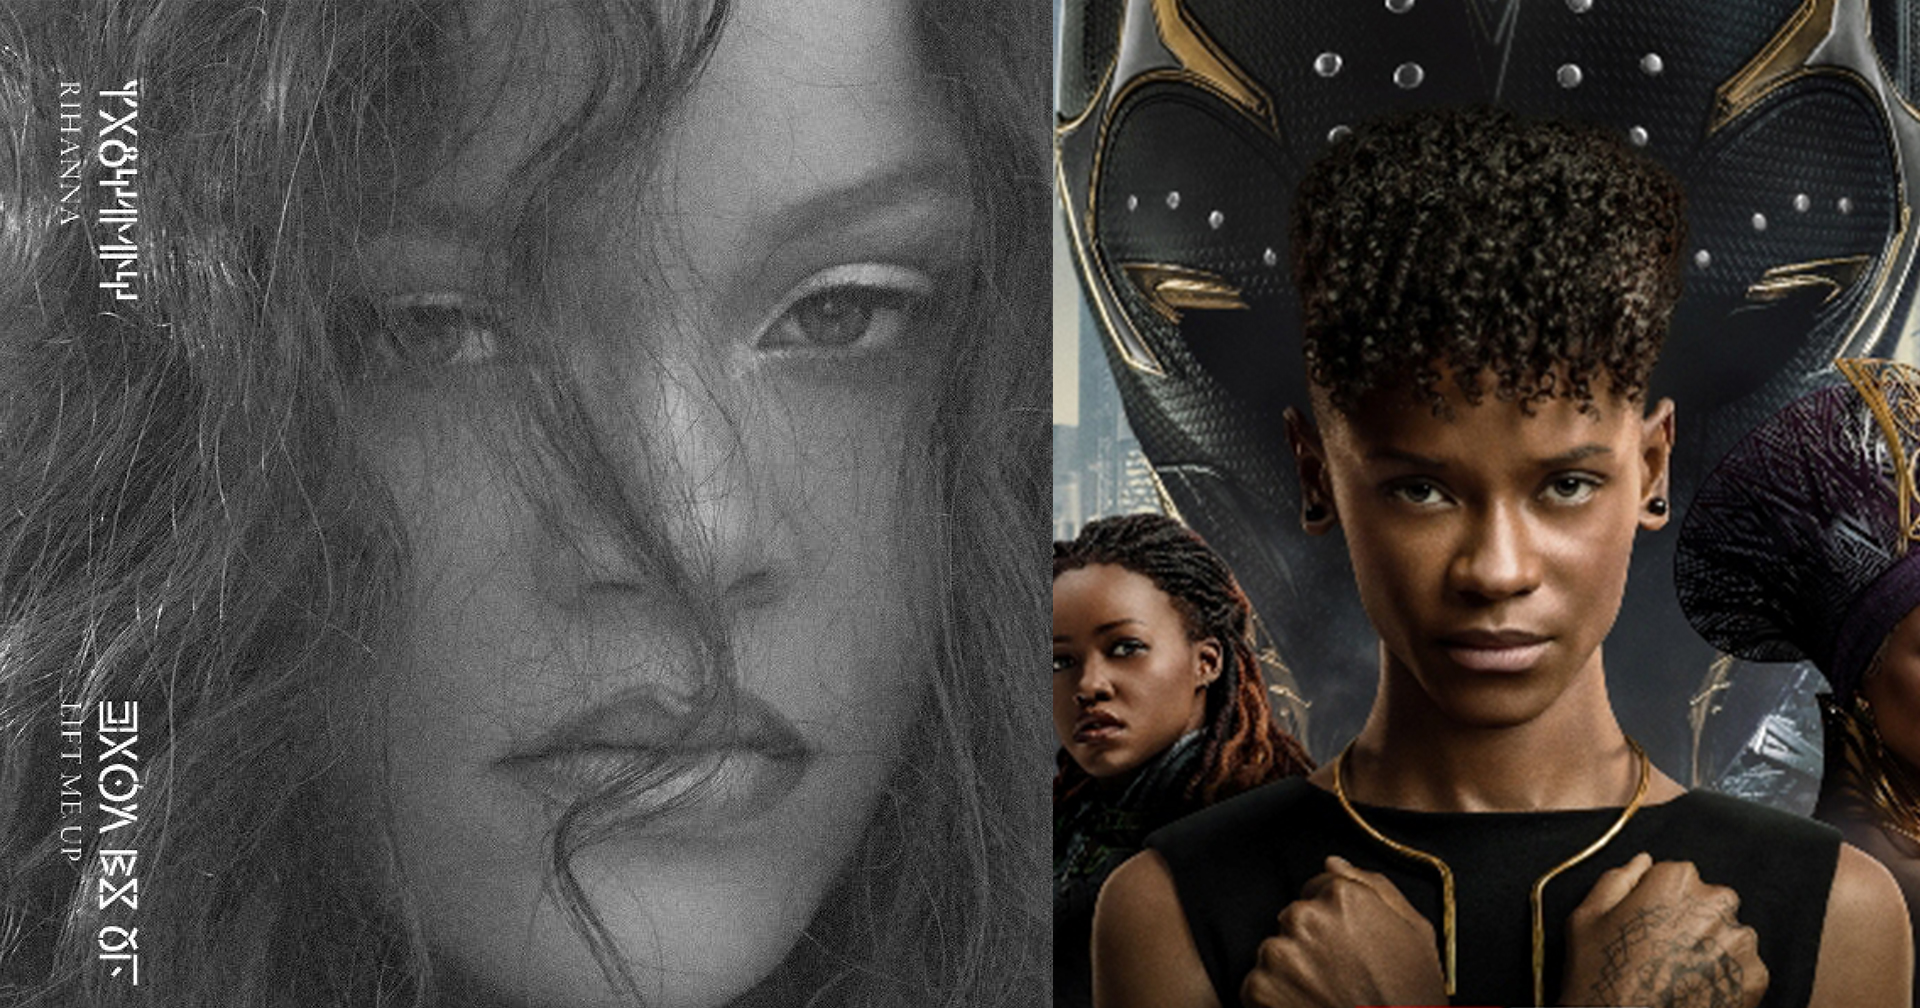 มาแล้ว! Rihanna ปล่อยเพลงใหม่ “Lift Me Up” ประกอบ ‘Black Panther: Wakanda Forever’